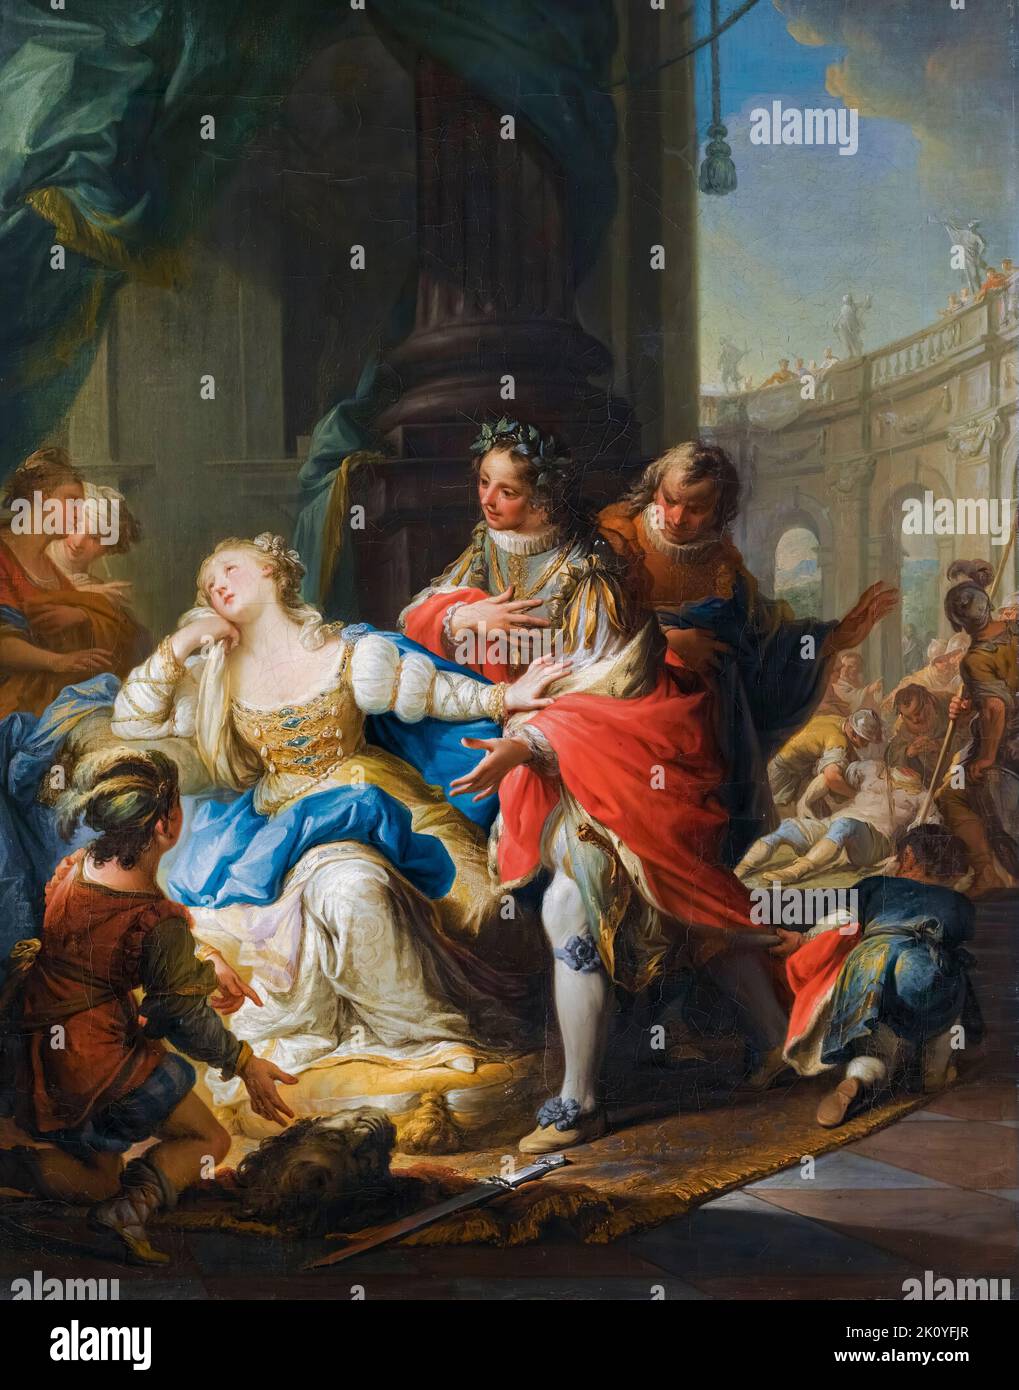 L'imperatrice Gunhilda di Germania accusata di adulterio è vendetta dalla sua pagina, dipingendo in olio su tela di Andrea Casali, prima del 1763 Foto Stock